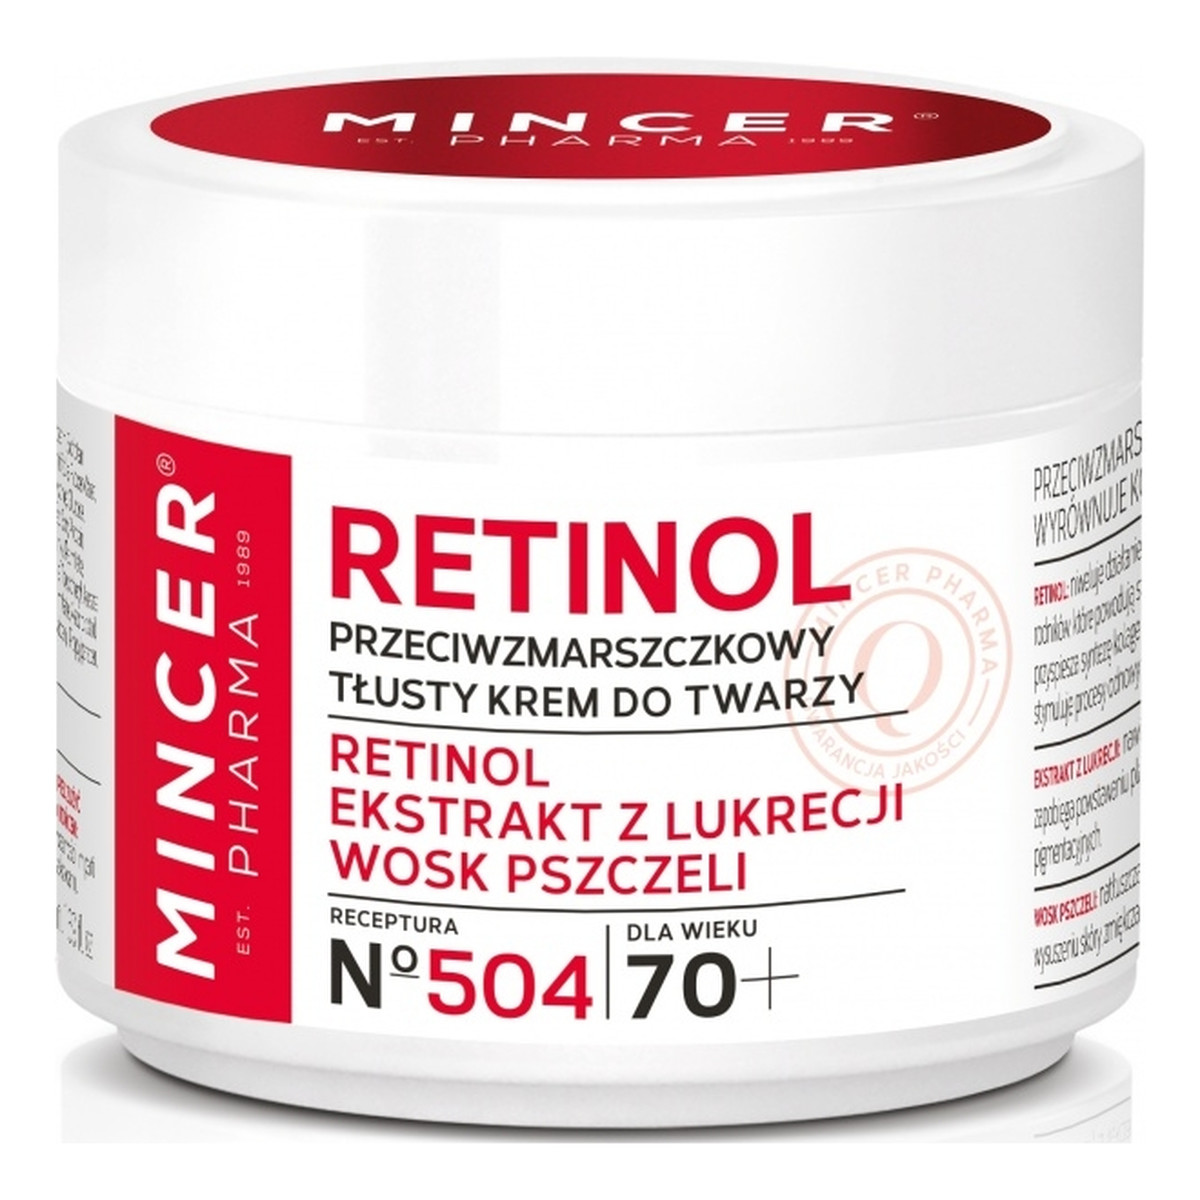 Mincer Pharma Retinol Przeciwzmarszczkowy tłusty krem do twarzy 60+ No 504 50ml